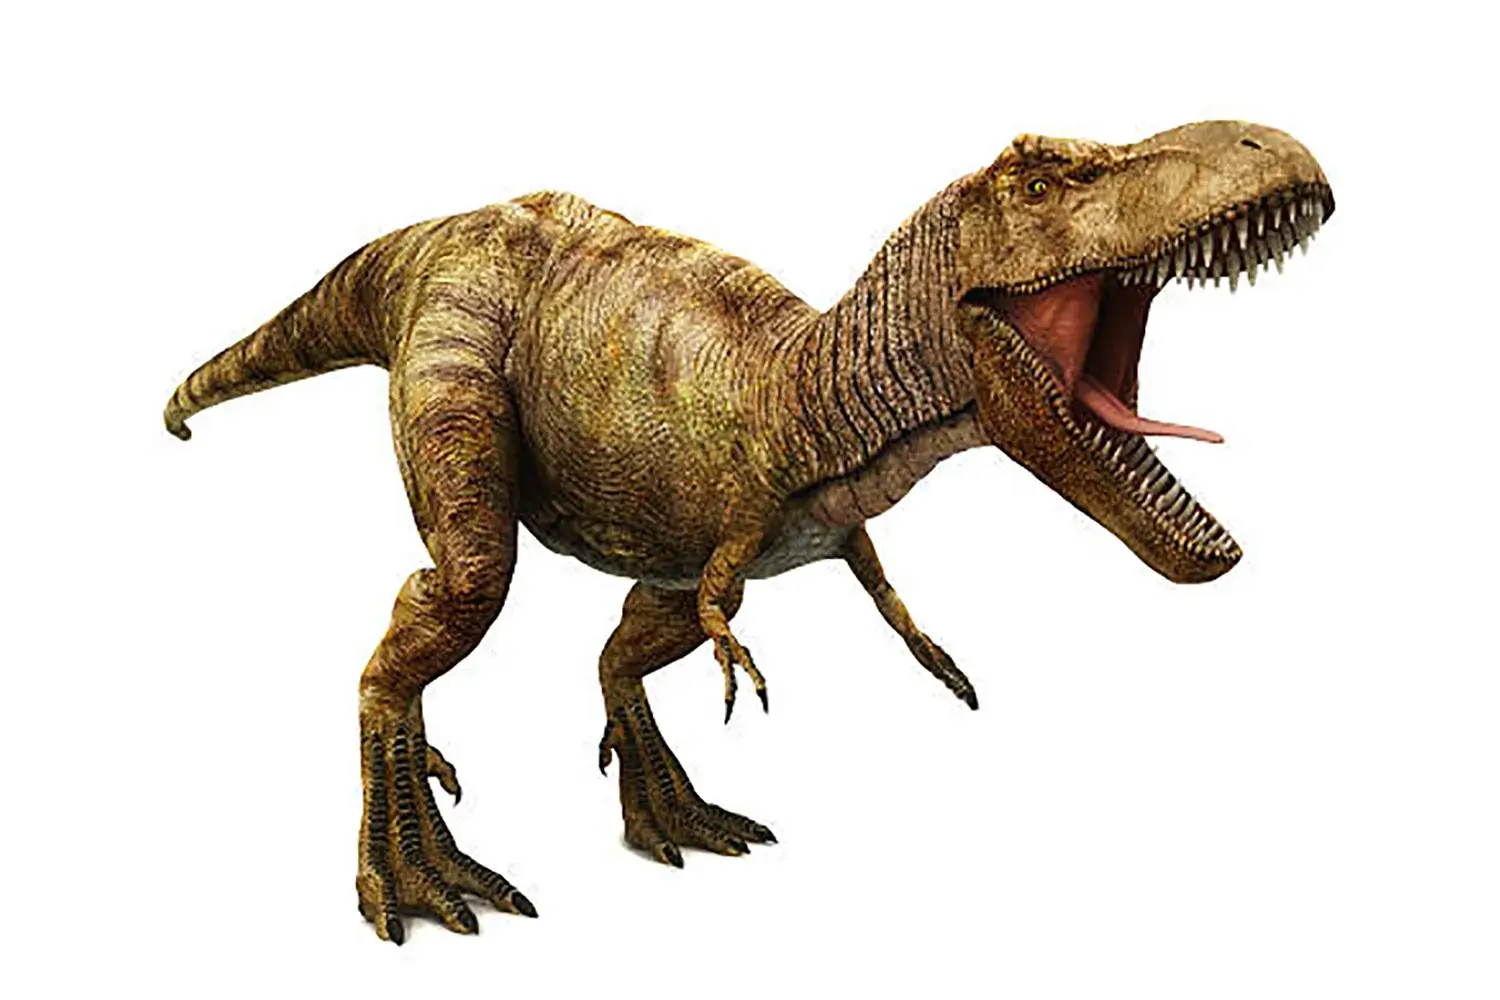 代表的な獣脚類の恐竜『ティラノサウルス』